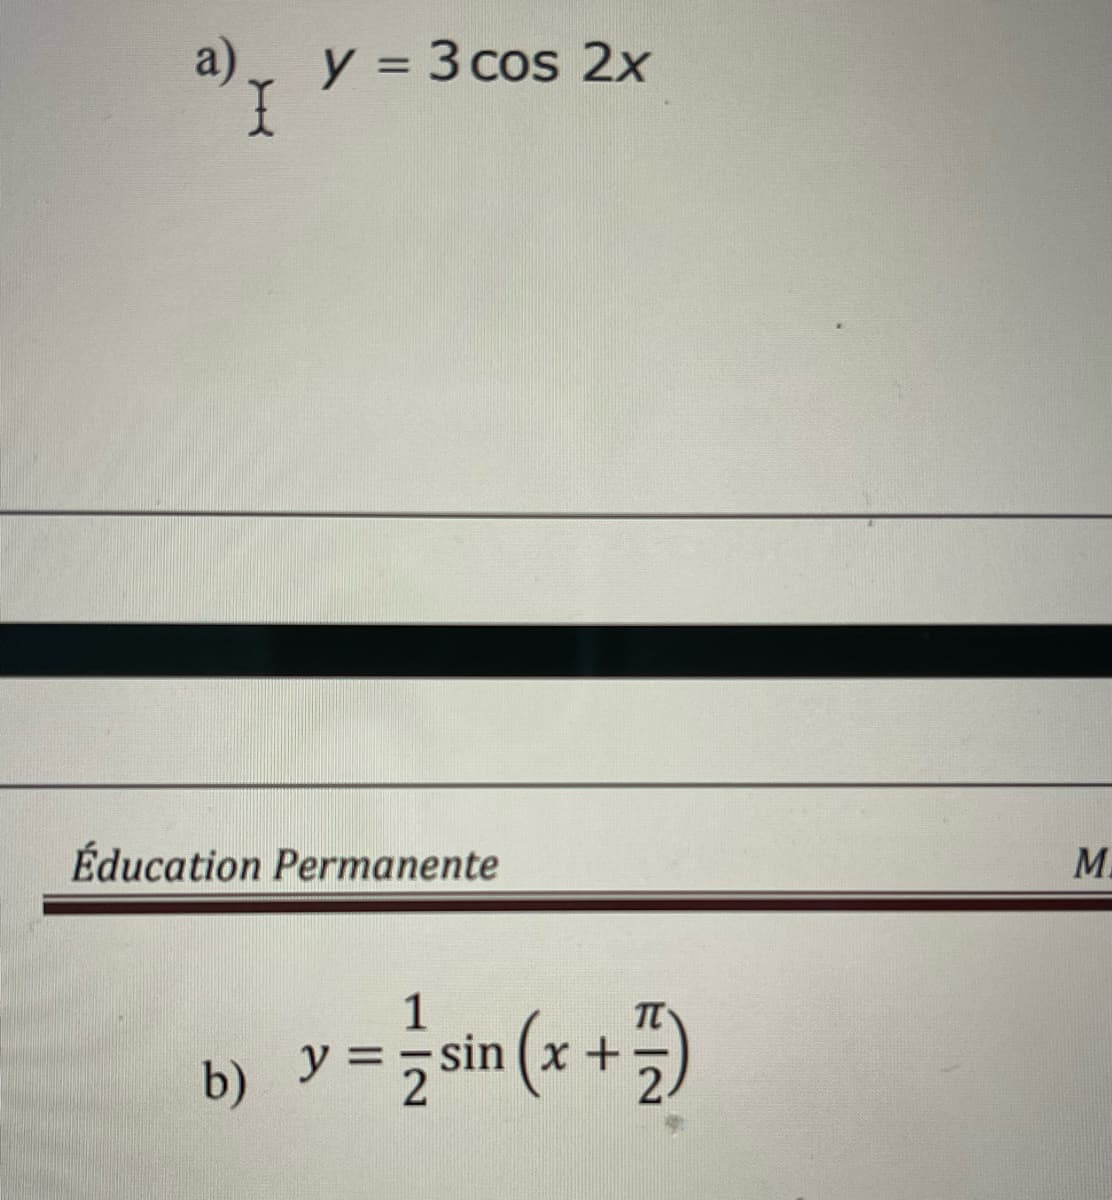 a) y = 3 cos 2x
Éducation Permanente
=sin(x + 1)
b) y =
M